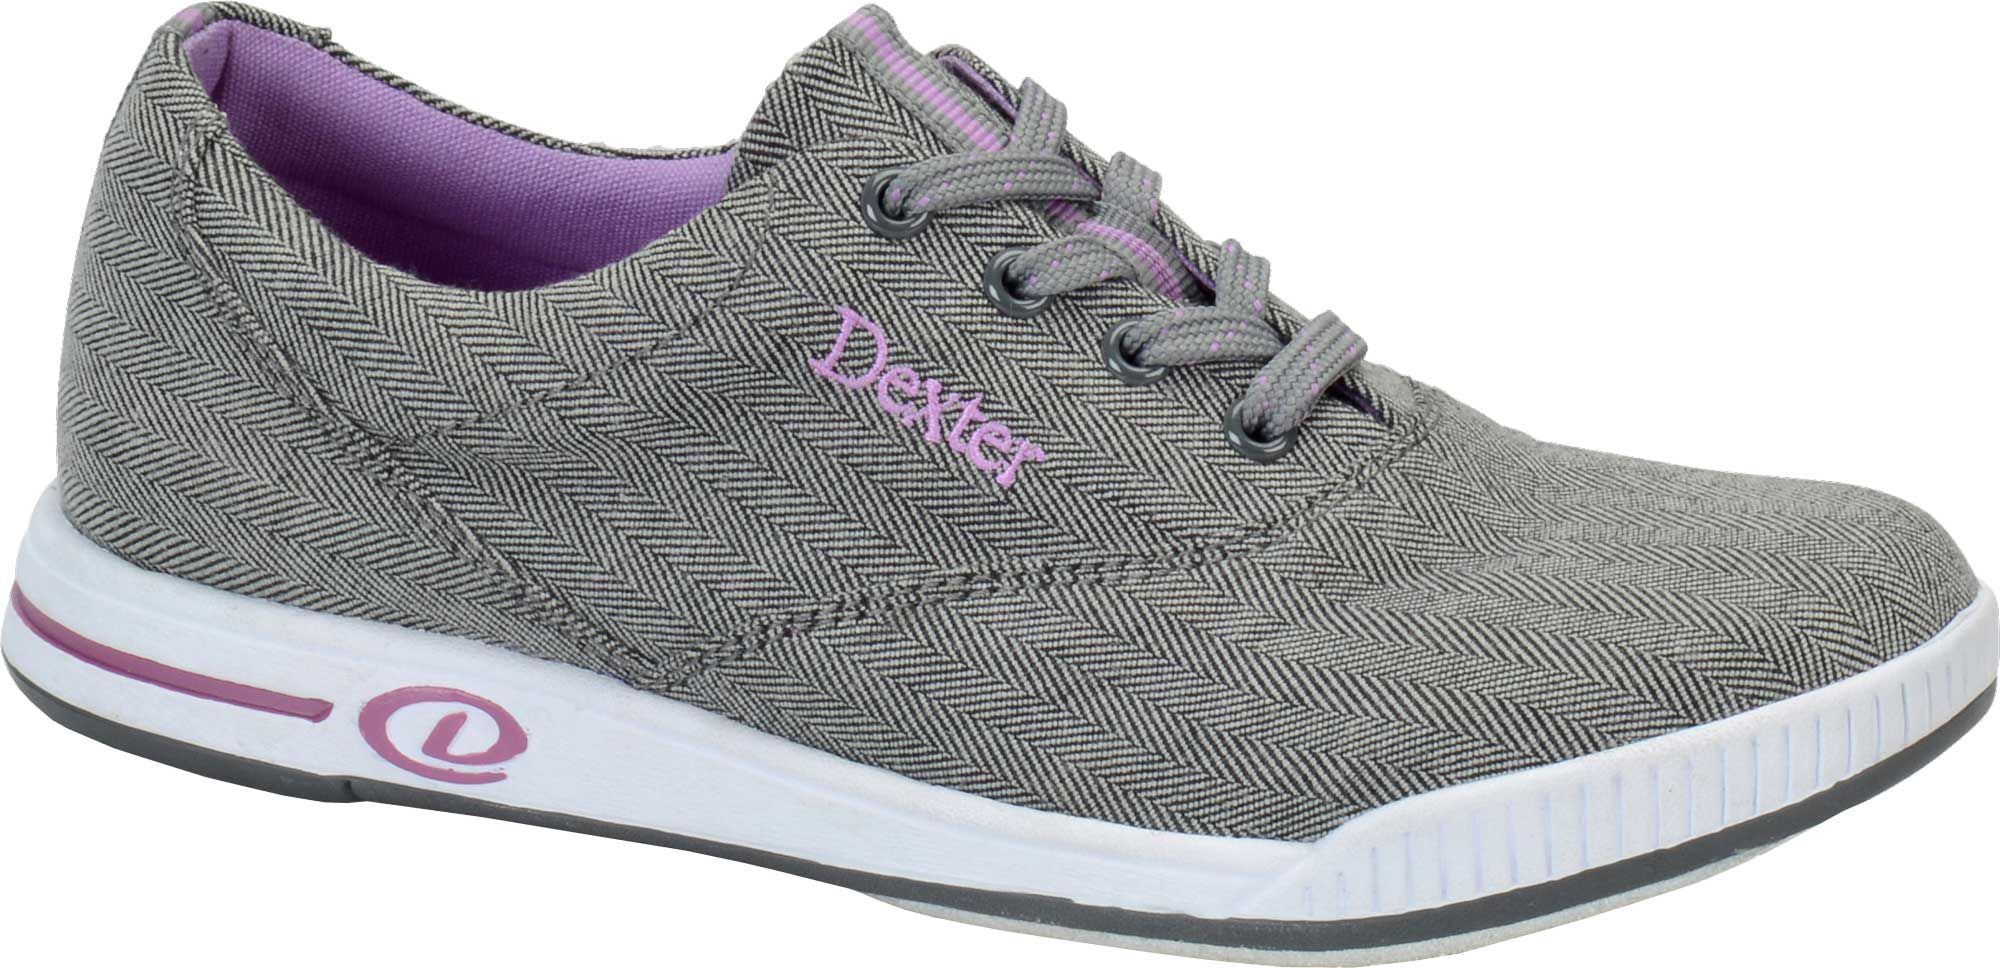 dexter katie bowling shoes